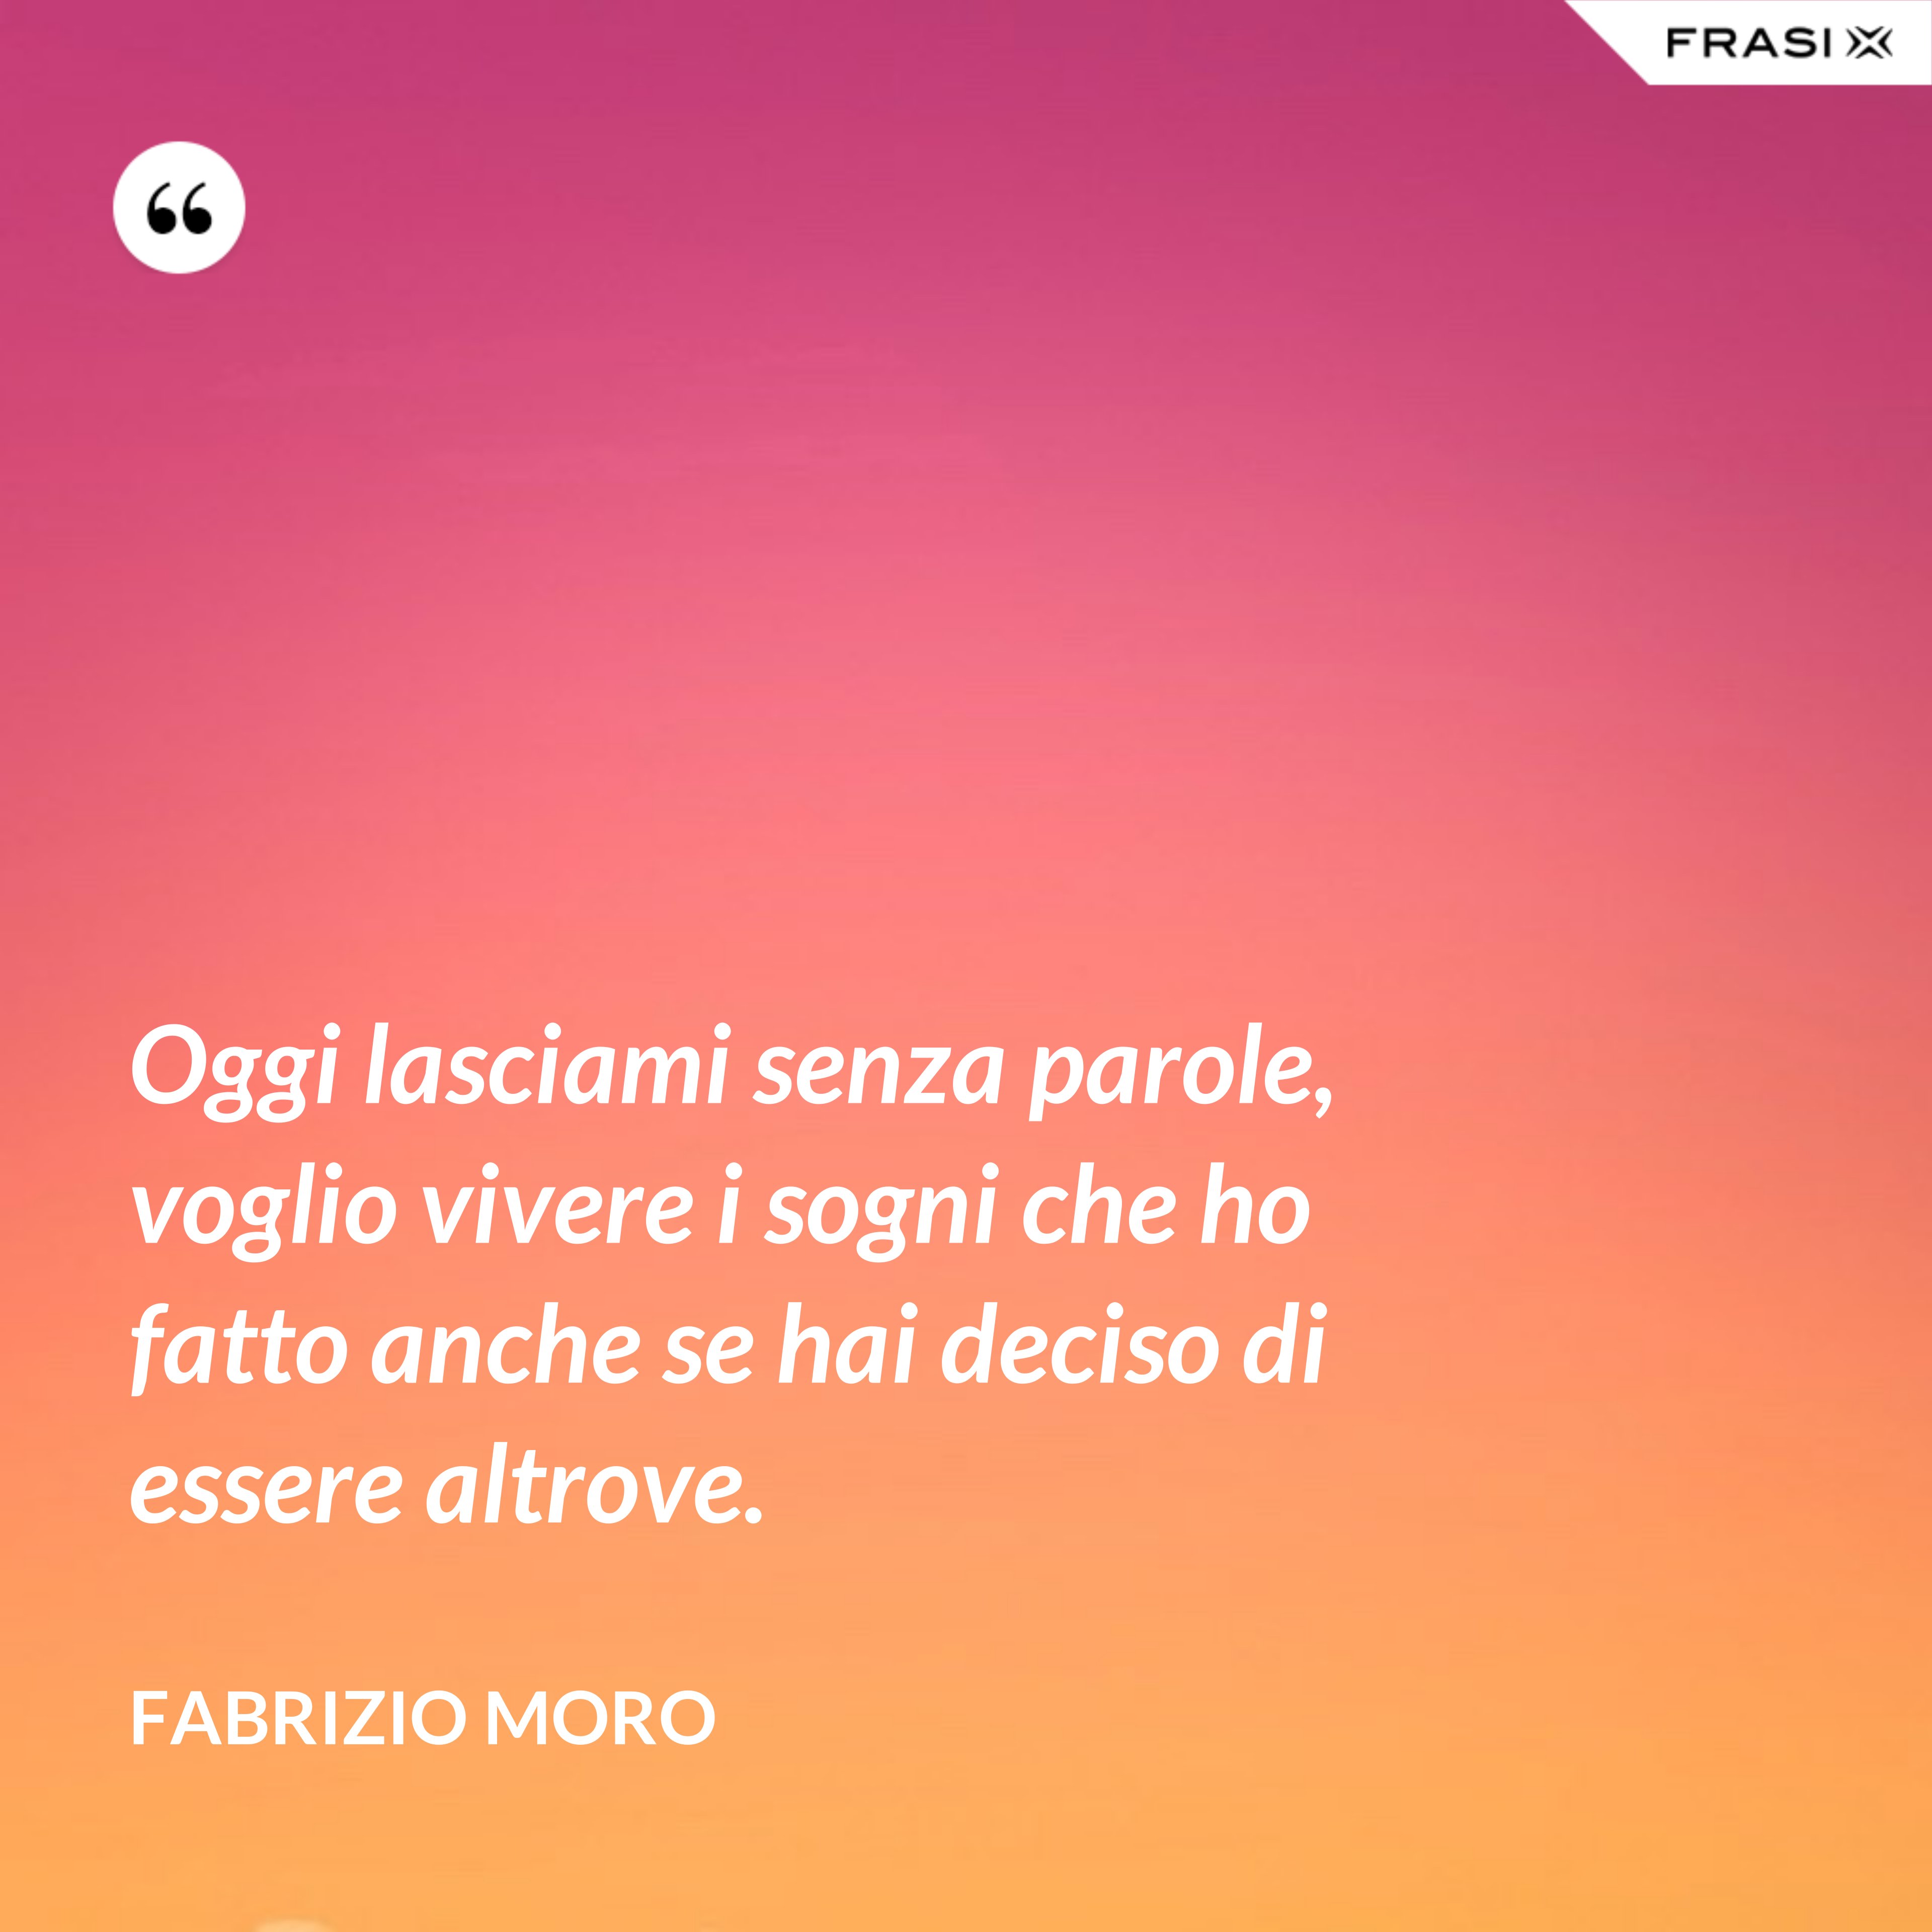 Oggi lasciami senza parole, voglio vivere i sogni che ho fatto anche se hai deciso di essere altrove. - Fabrizio Moro